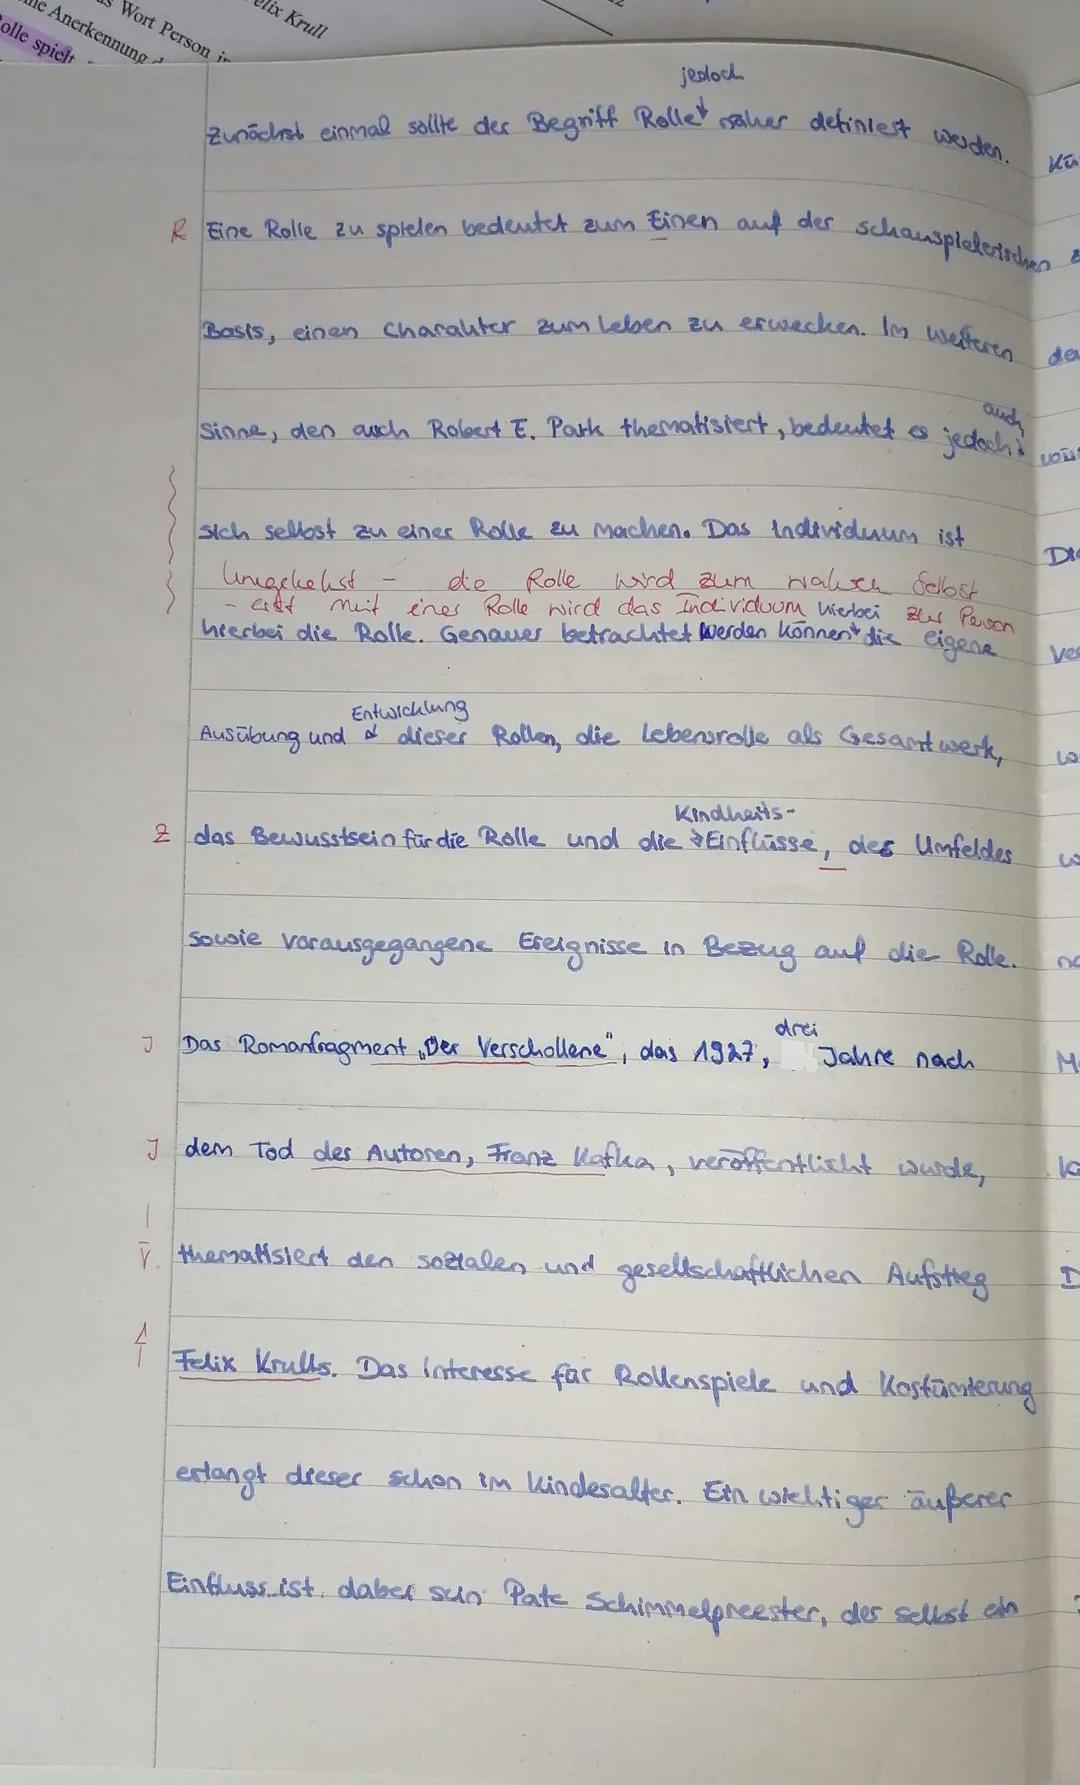 LK Deutsch (KS 2), 1. Klausur
Werkvergleich
Thema
Franz Kafka (1883-1924): Der Verschollene
Thomas Mann (1875-1955): Bekenntnisse des Hochst